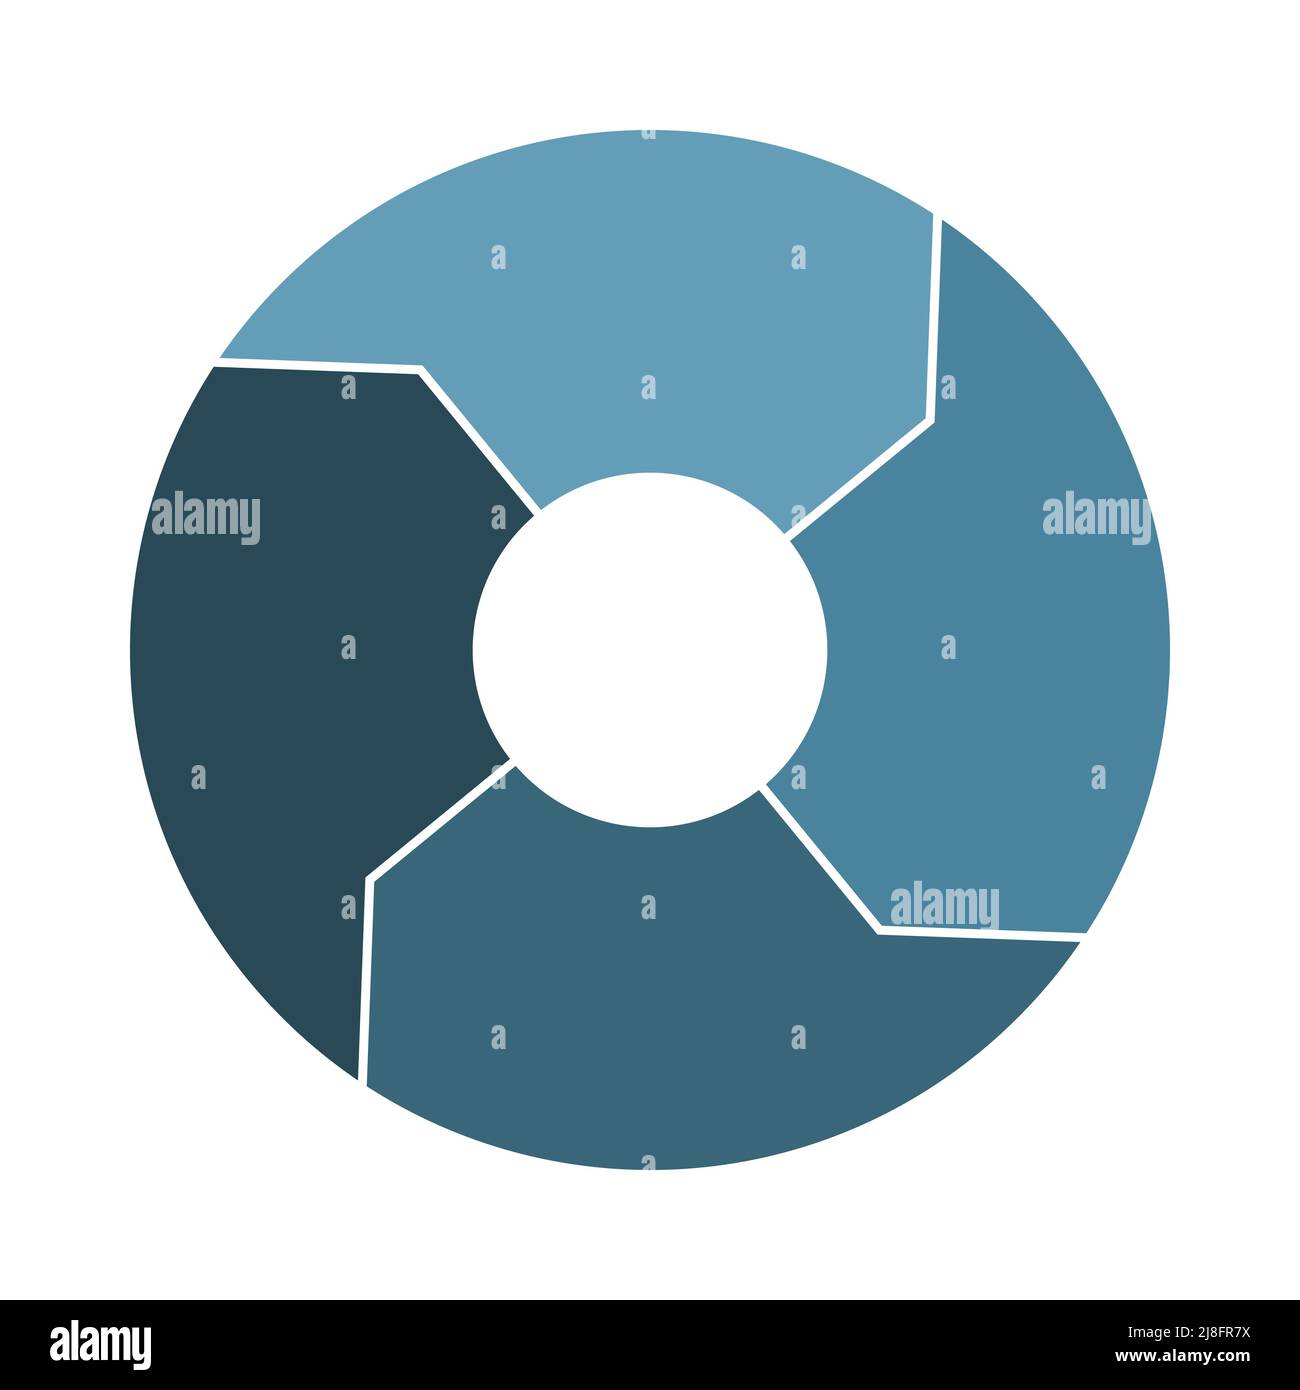 Lebenszykluszirkulation mit 4 Pfeilen. Infograph mit vier dicken Teilen. Infografiken aus blauem Stahl in Marineblau. Flache Vektorgrafik. Stock Vektor